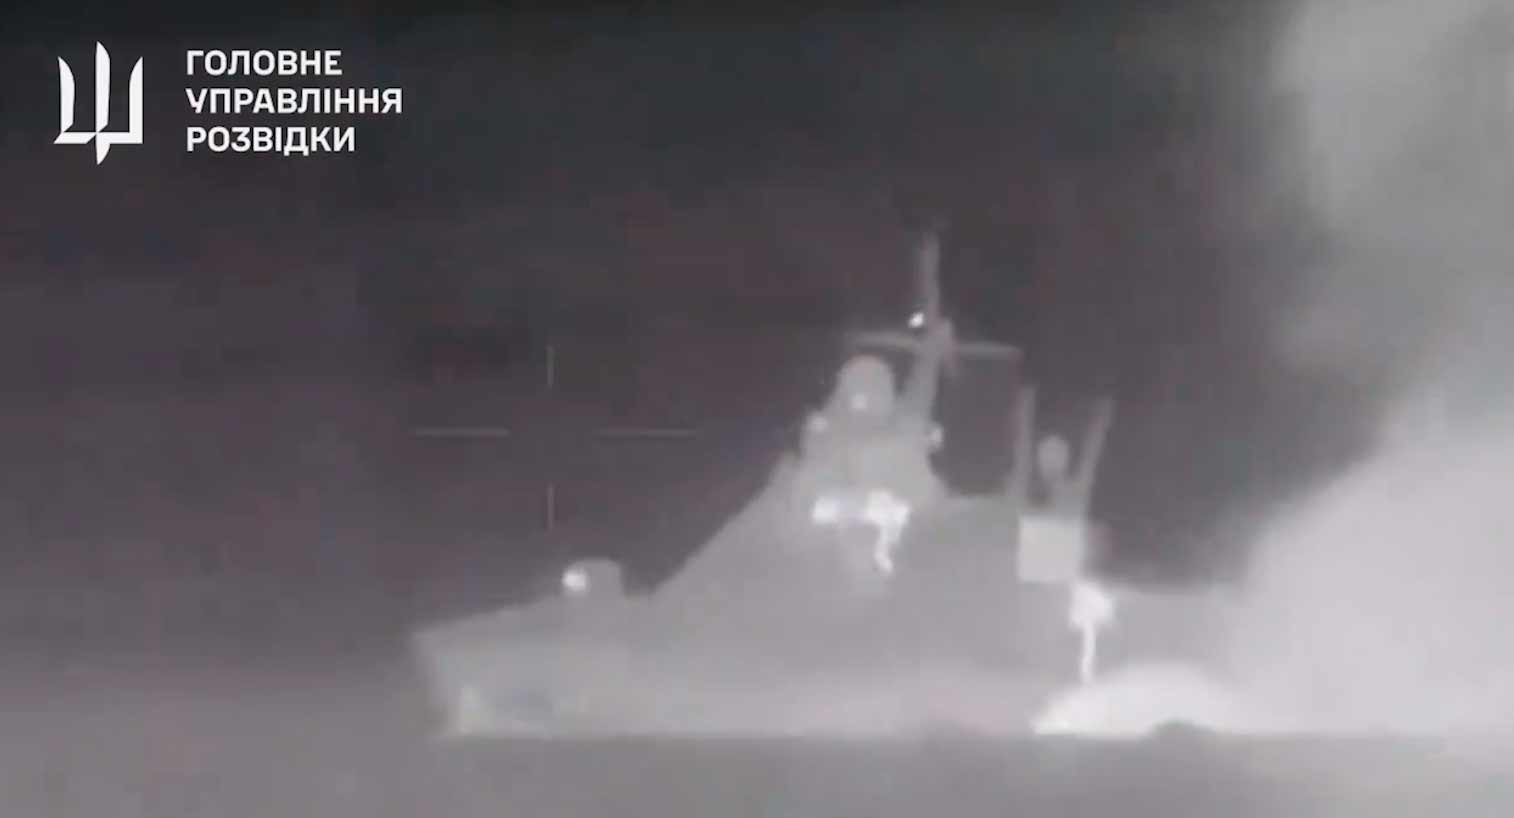 Nuovo video mostra l'esplosione che ha affondato la nave russa Sergey Kotov. Riproduzione Twitter @wartranslated